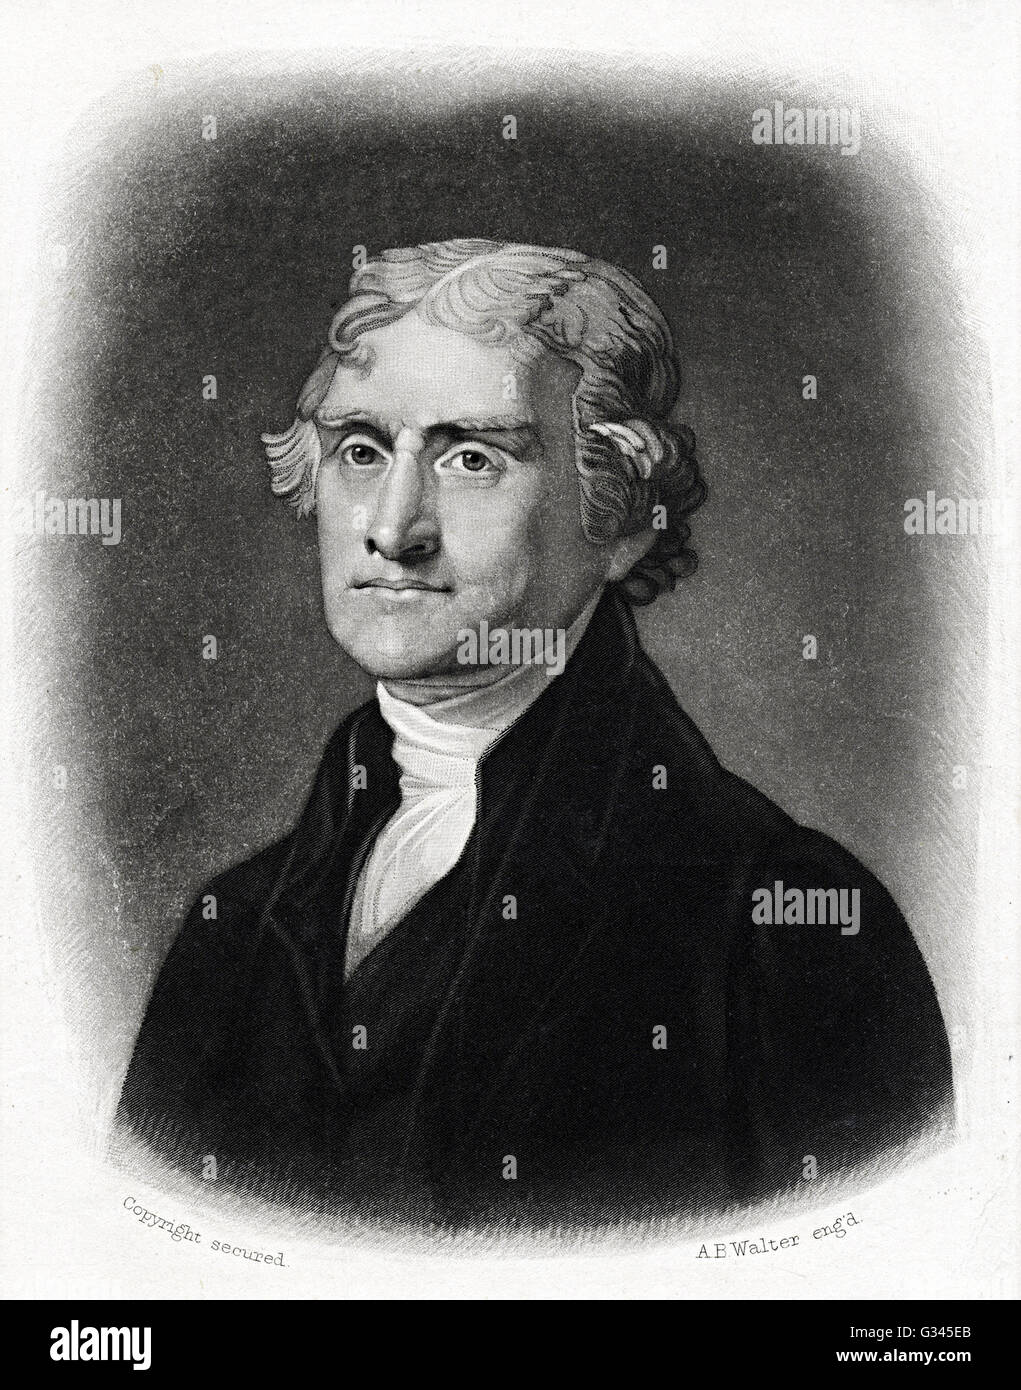 Thomas Jefferson Stock Photo